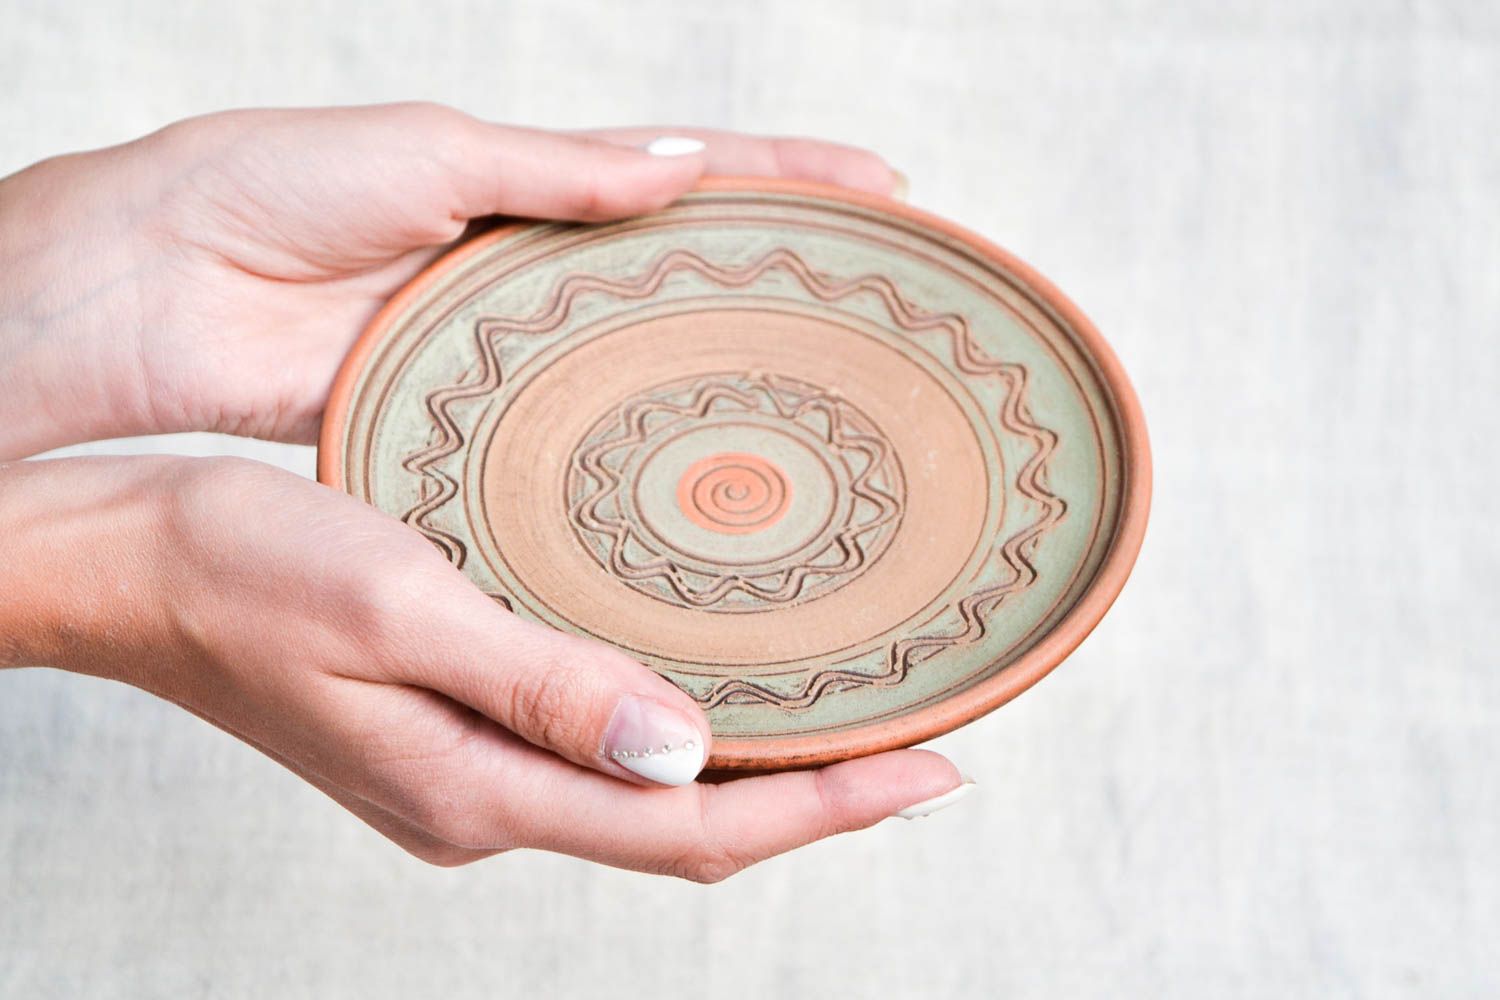 Расписная тарелка хенд мейд глиняная посуда керамическая тарелка эко стиль фото 2